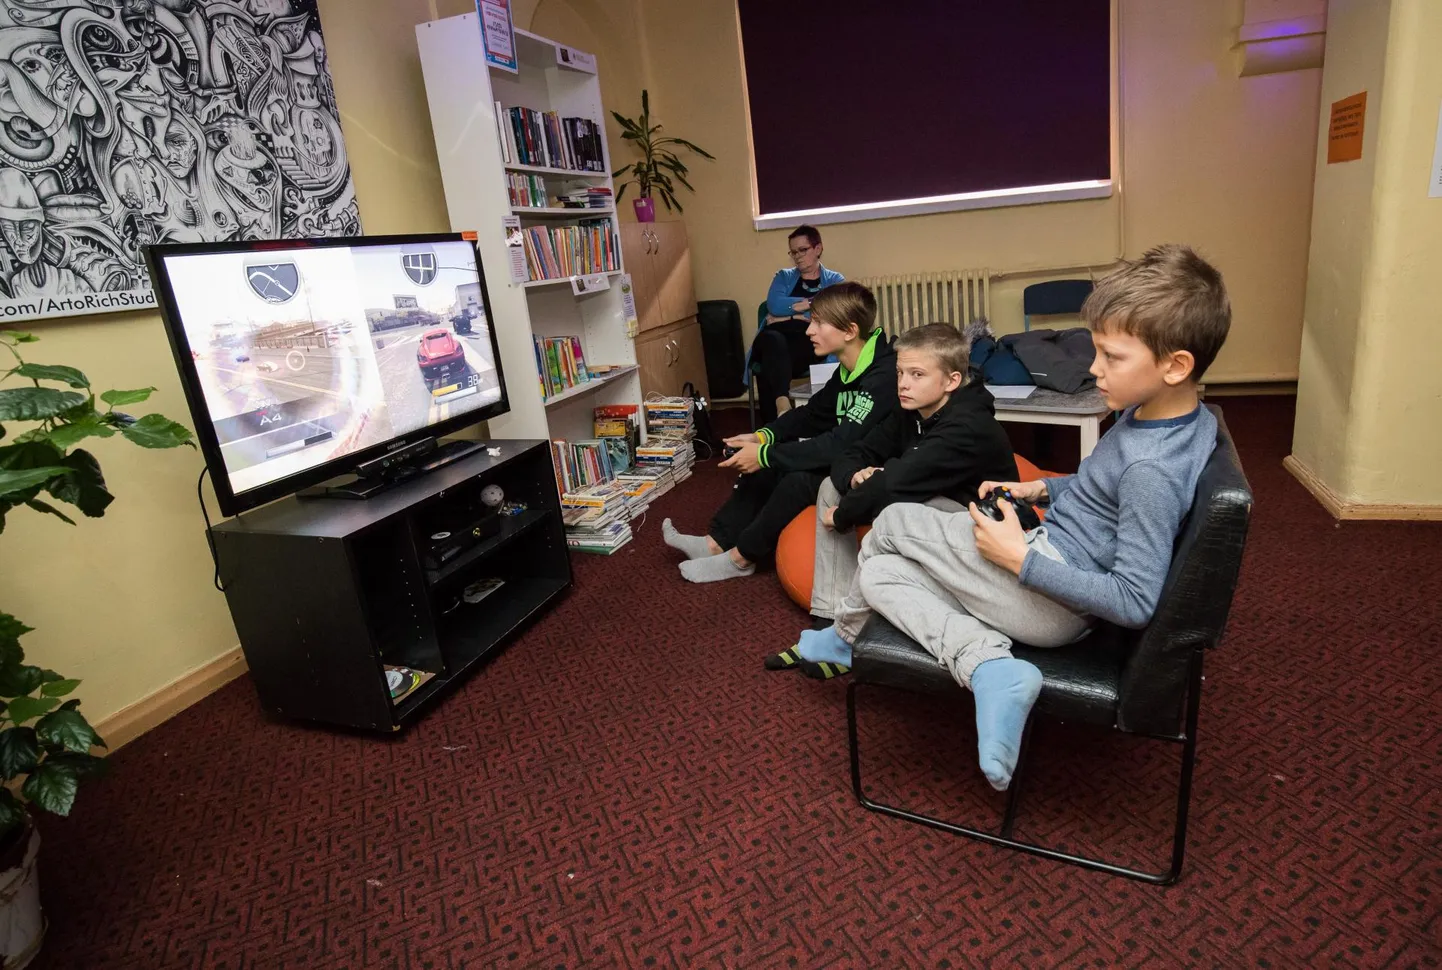 Noored videomängurid Rakvere avatud noortekeskuses.